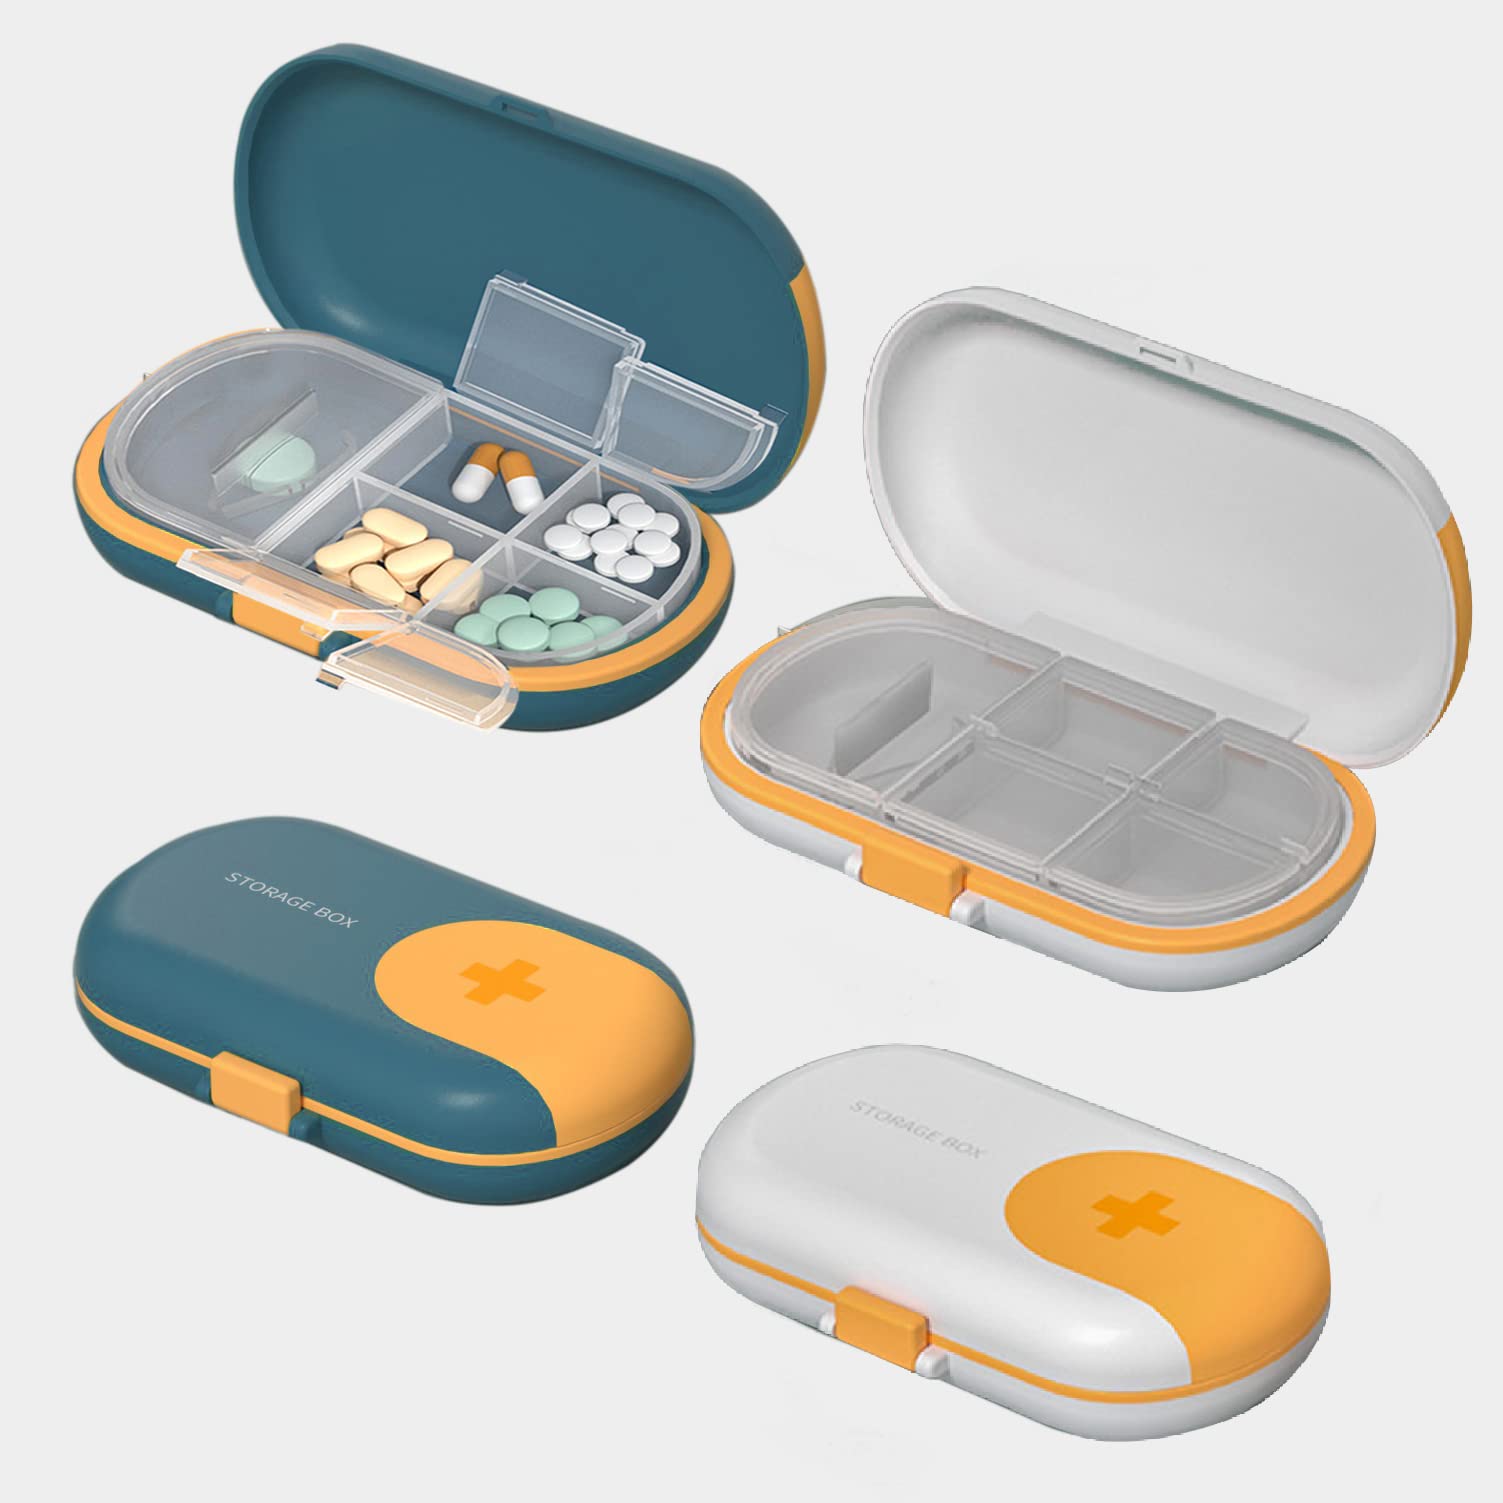 MAGIC SELECT Pastillero con Cortador de Pastillas y 4 Compartimentos -  Organizador Medicación de Plástico ABS Tamaño Bolsillo